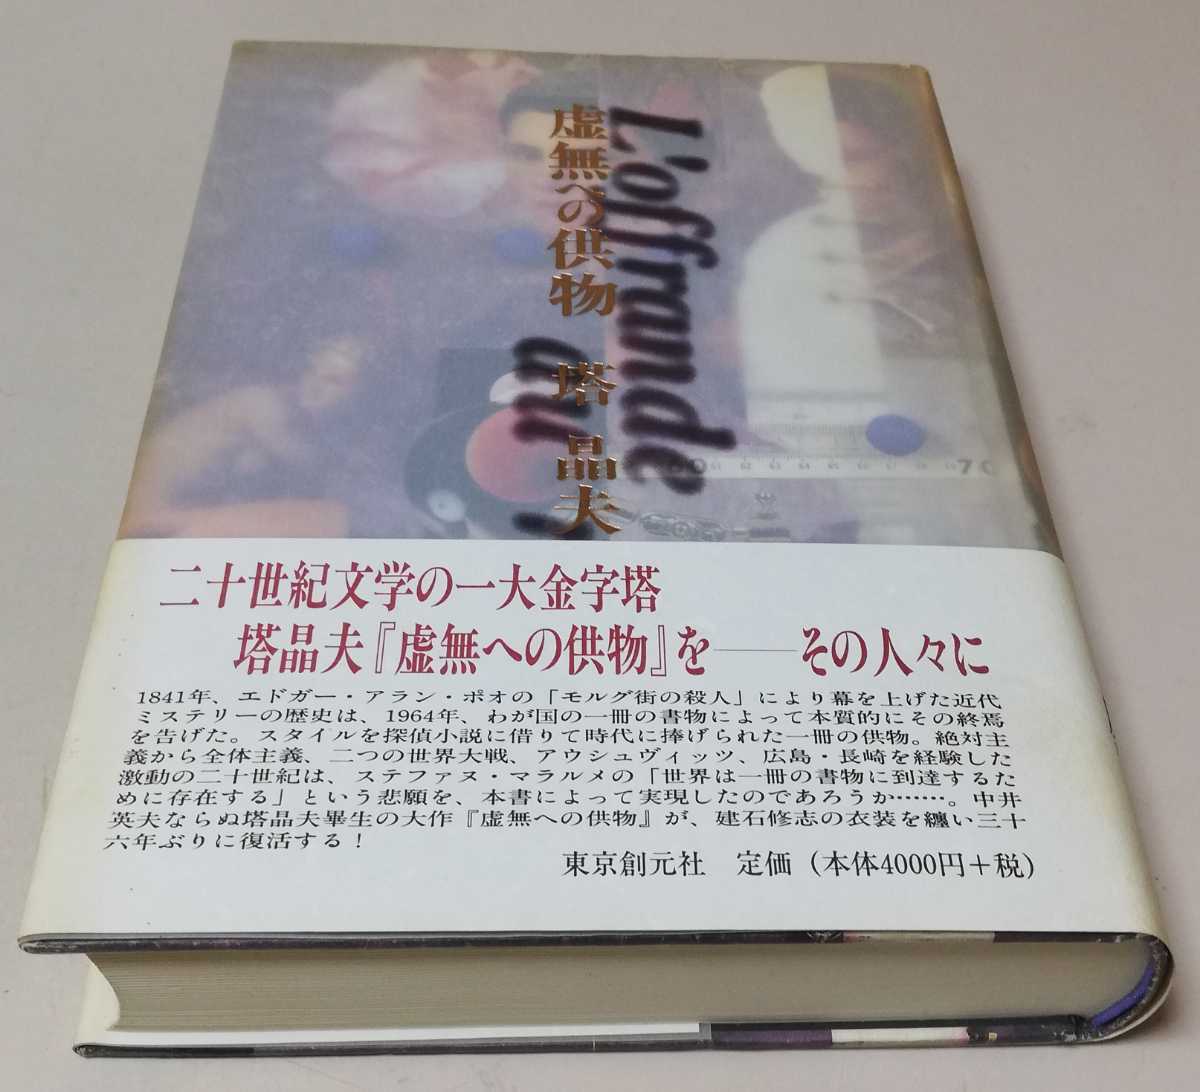 塔晶夫(中井英夫)虚無への供物 2000年 カバー帯付 東京創元社 装幀